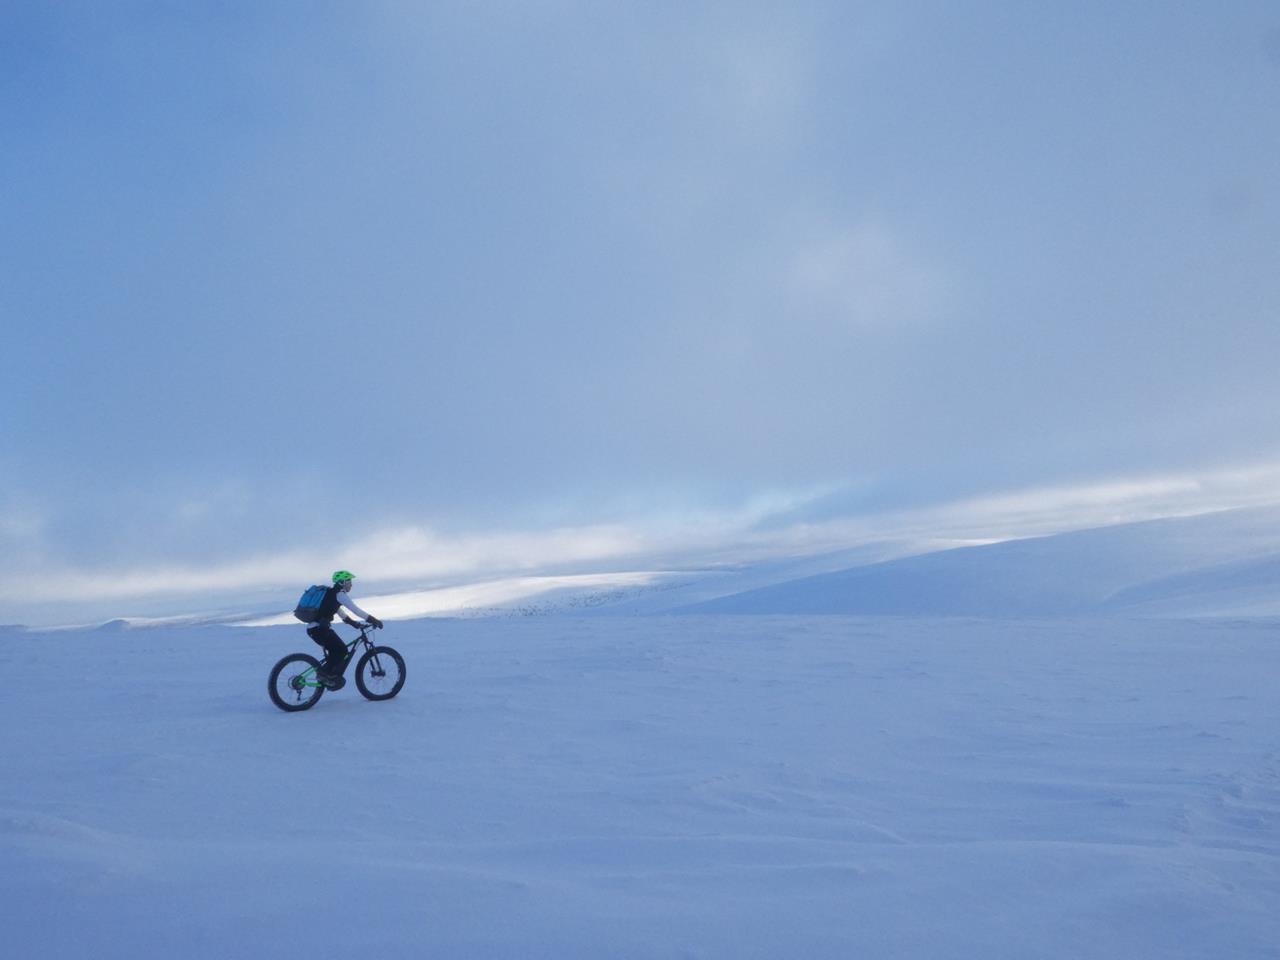 beitune Winterreise Lappland